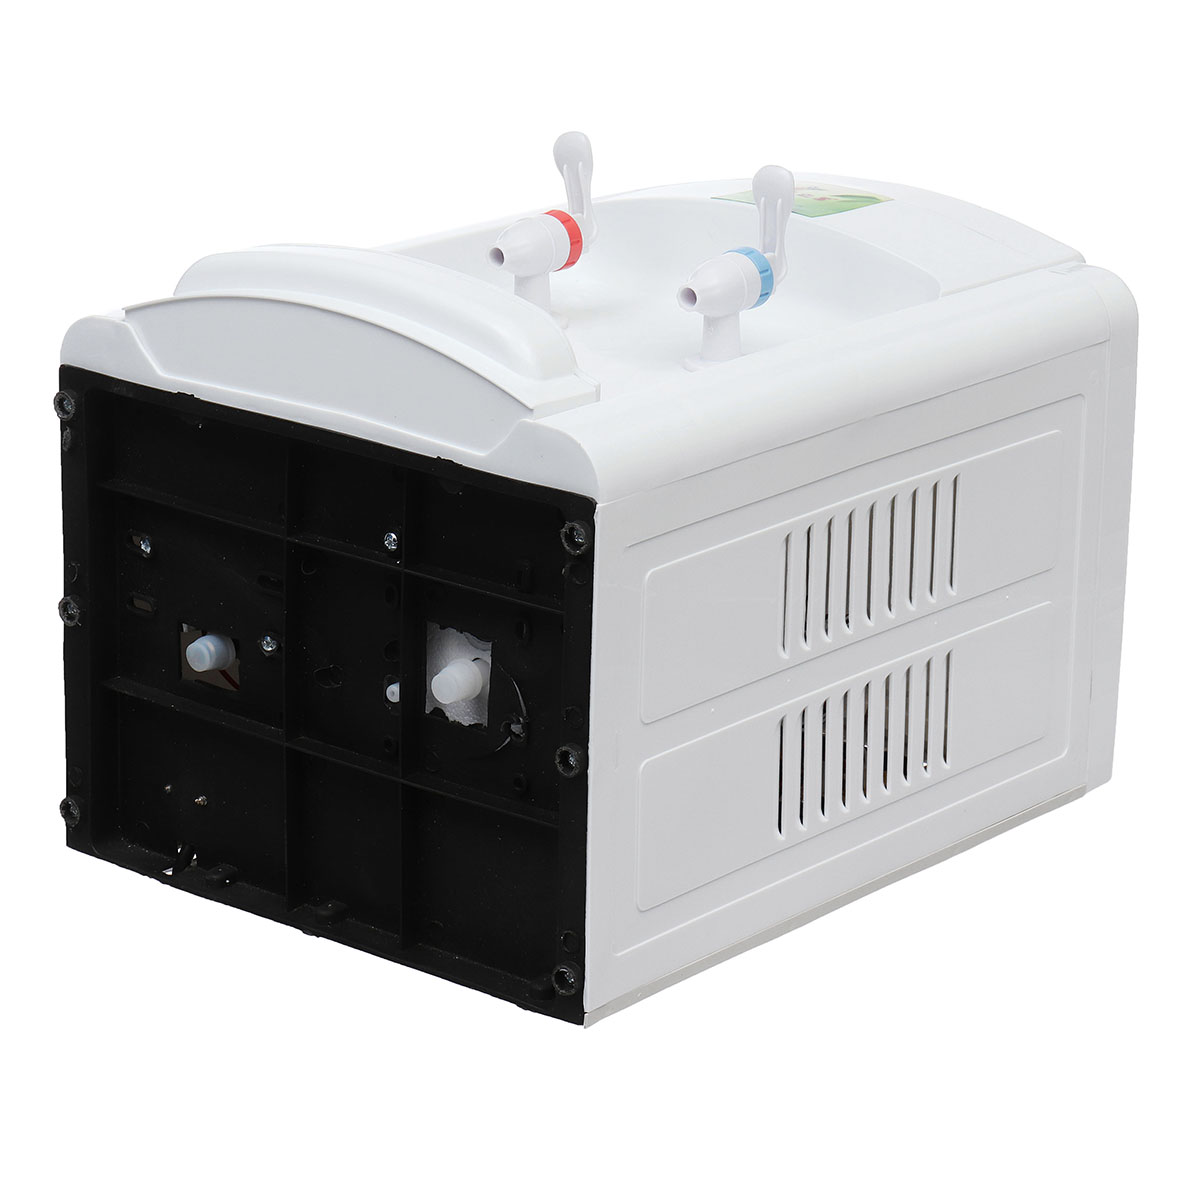 220V-Electric-Cold-Hot-Water-Beverage-Cooler-Dispenser-3-5-Gallon-Home-Office-Use-Desktop-1617196-4